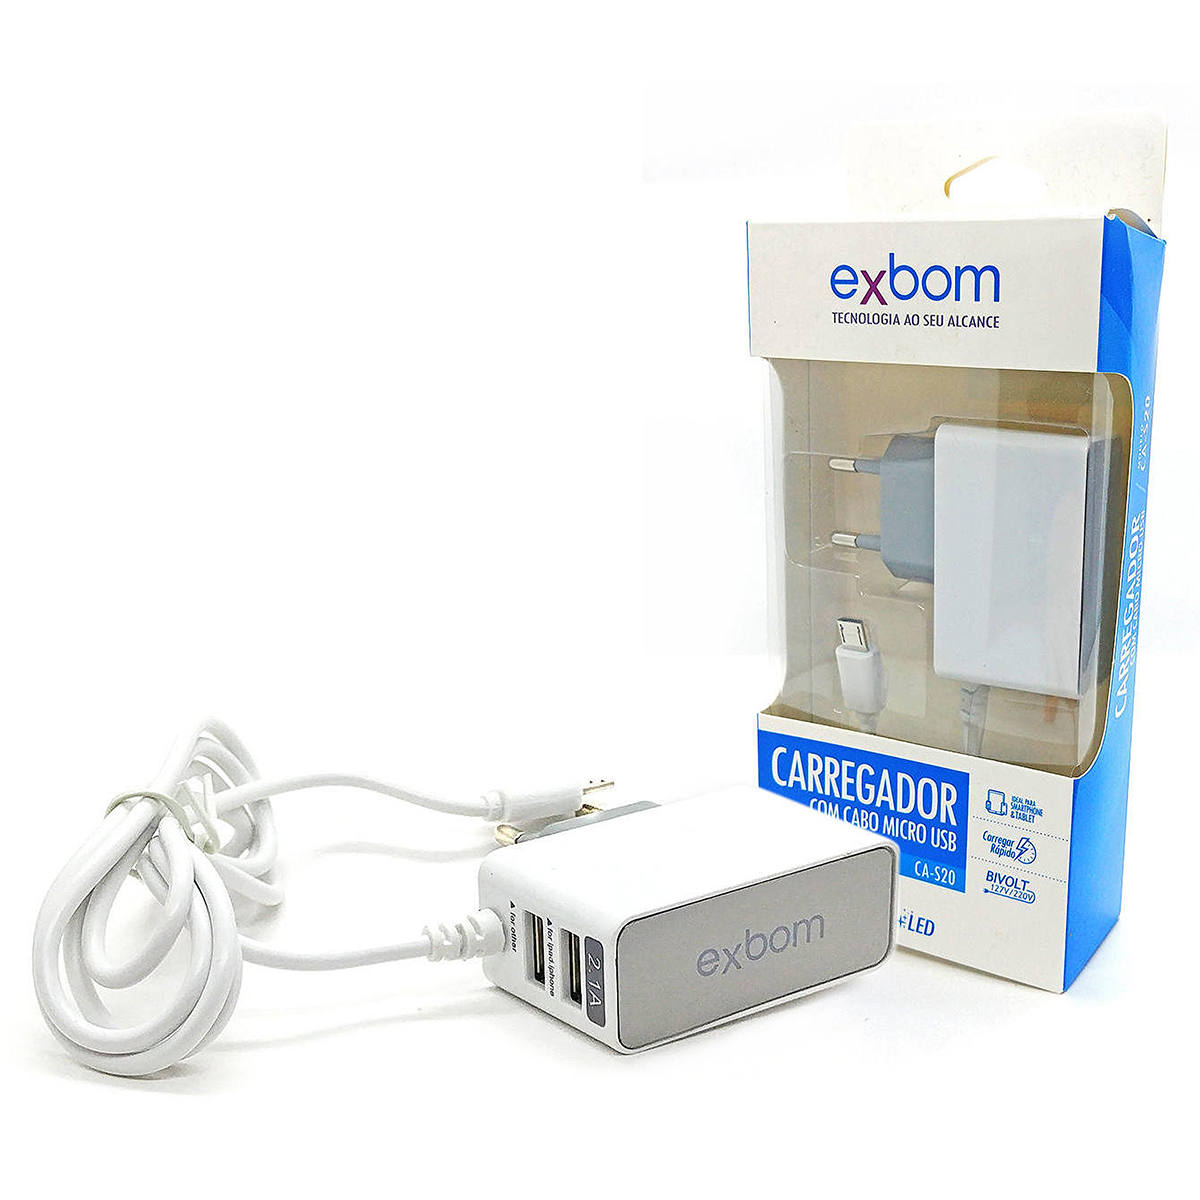 Carregador de Viagem USB Duplo para Celular com Cabo Micro USB V8 Bivolt Carga Rápida 2.1A com LED Exbom CA-S20